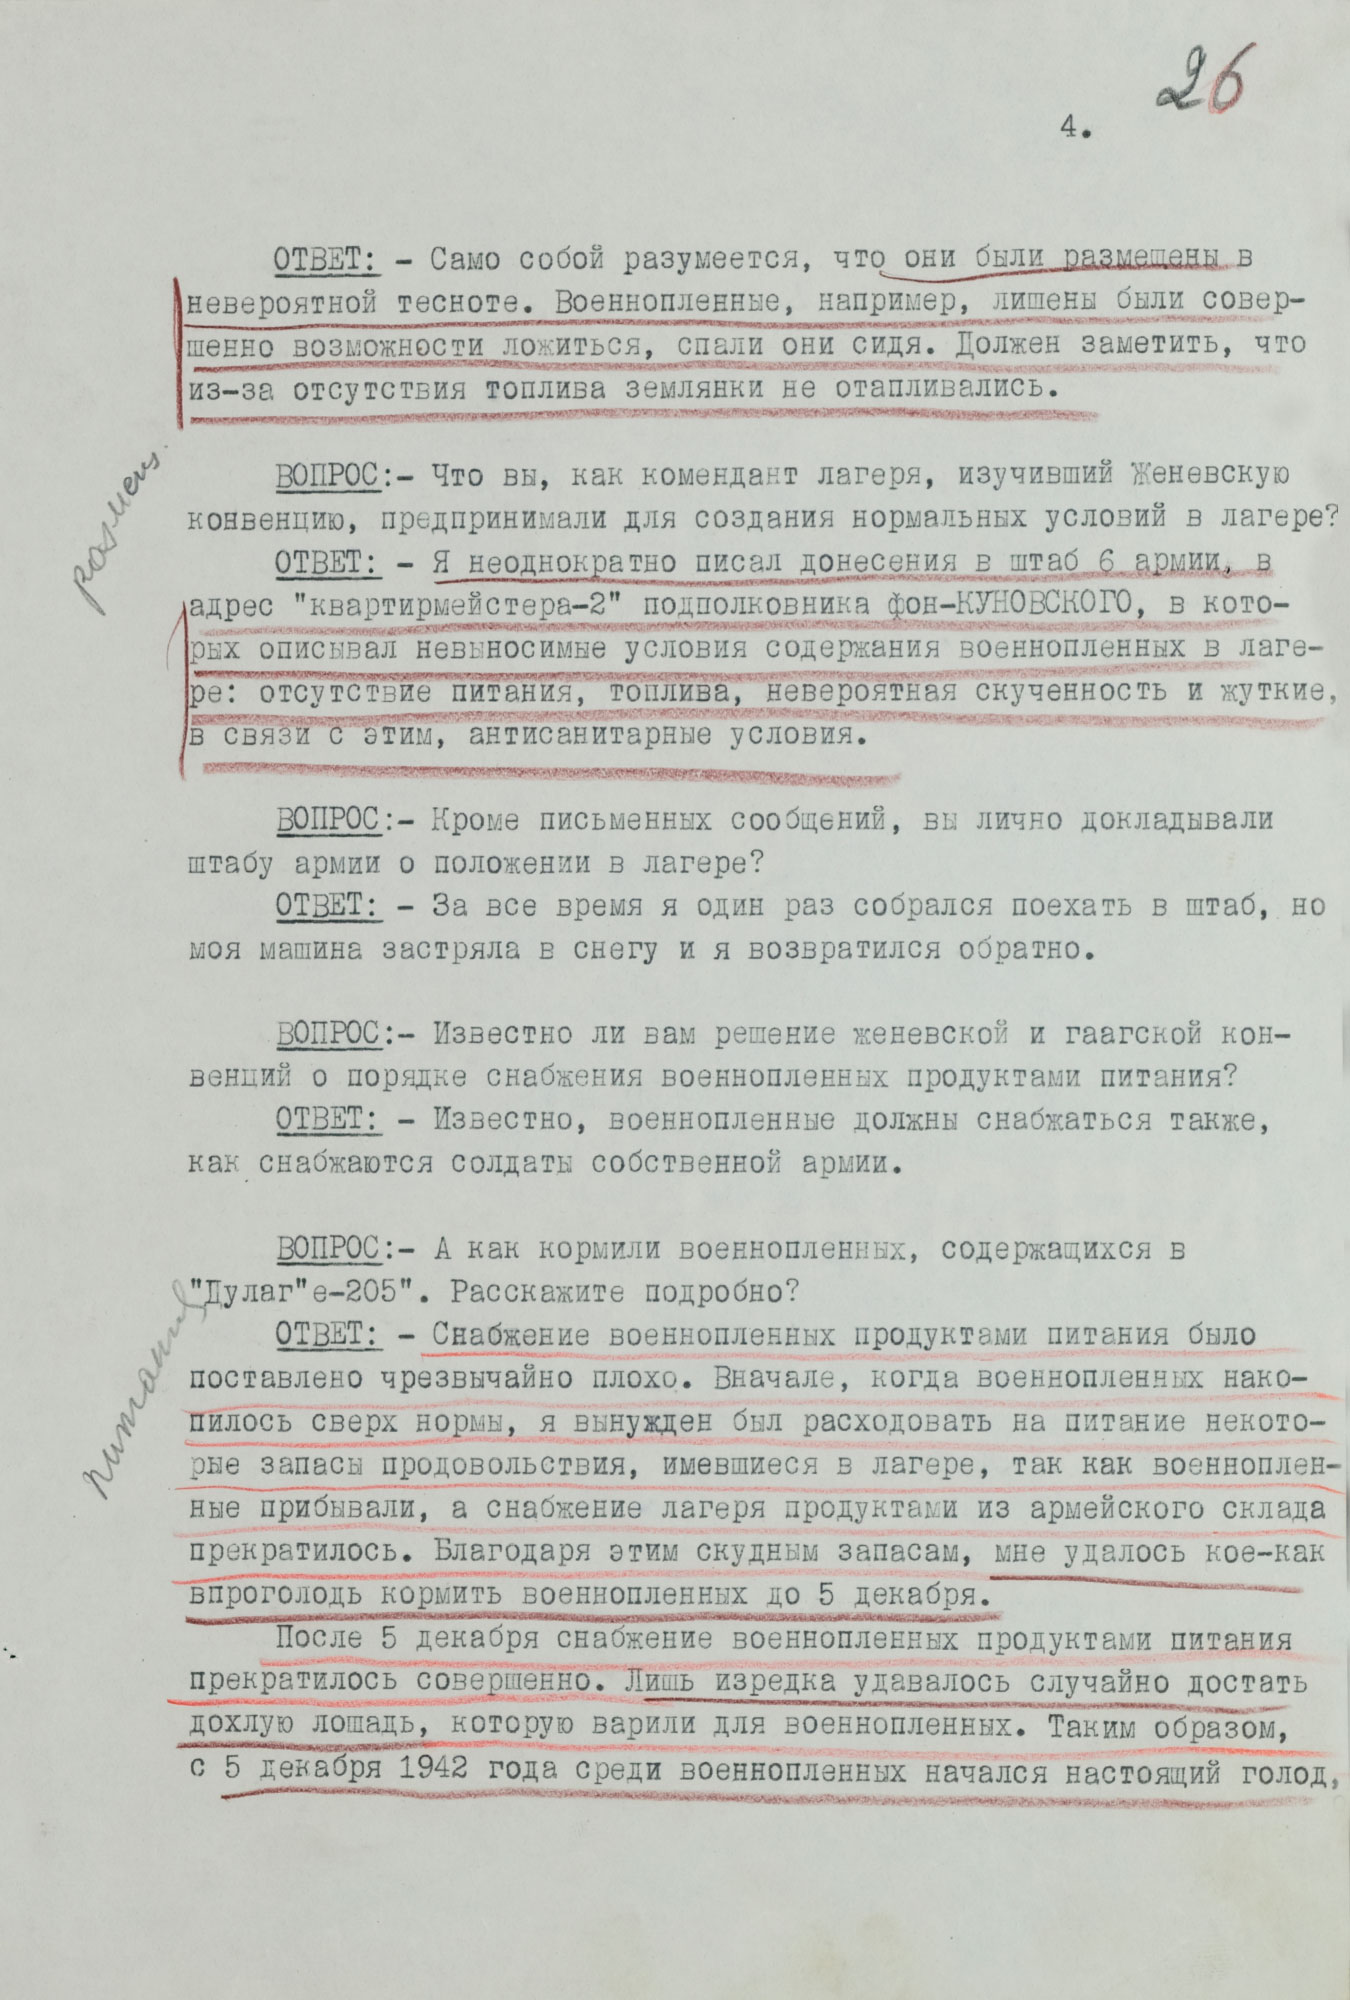 Протокол допроса военнопленного полковника германской армии КЕРПЕРТА Рудольфа, коменданта «Дулаг-205». 23 июня 1943 г. Страница 4